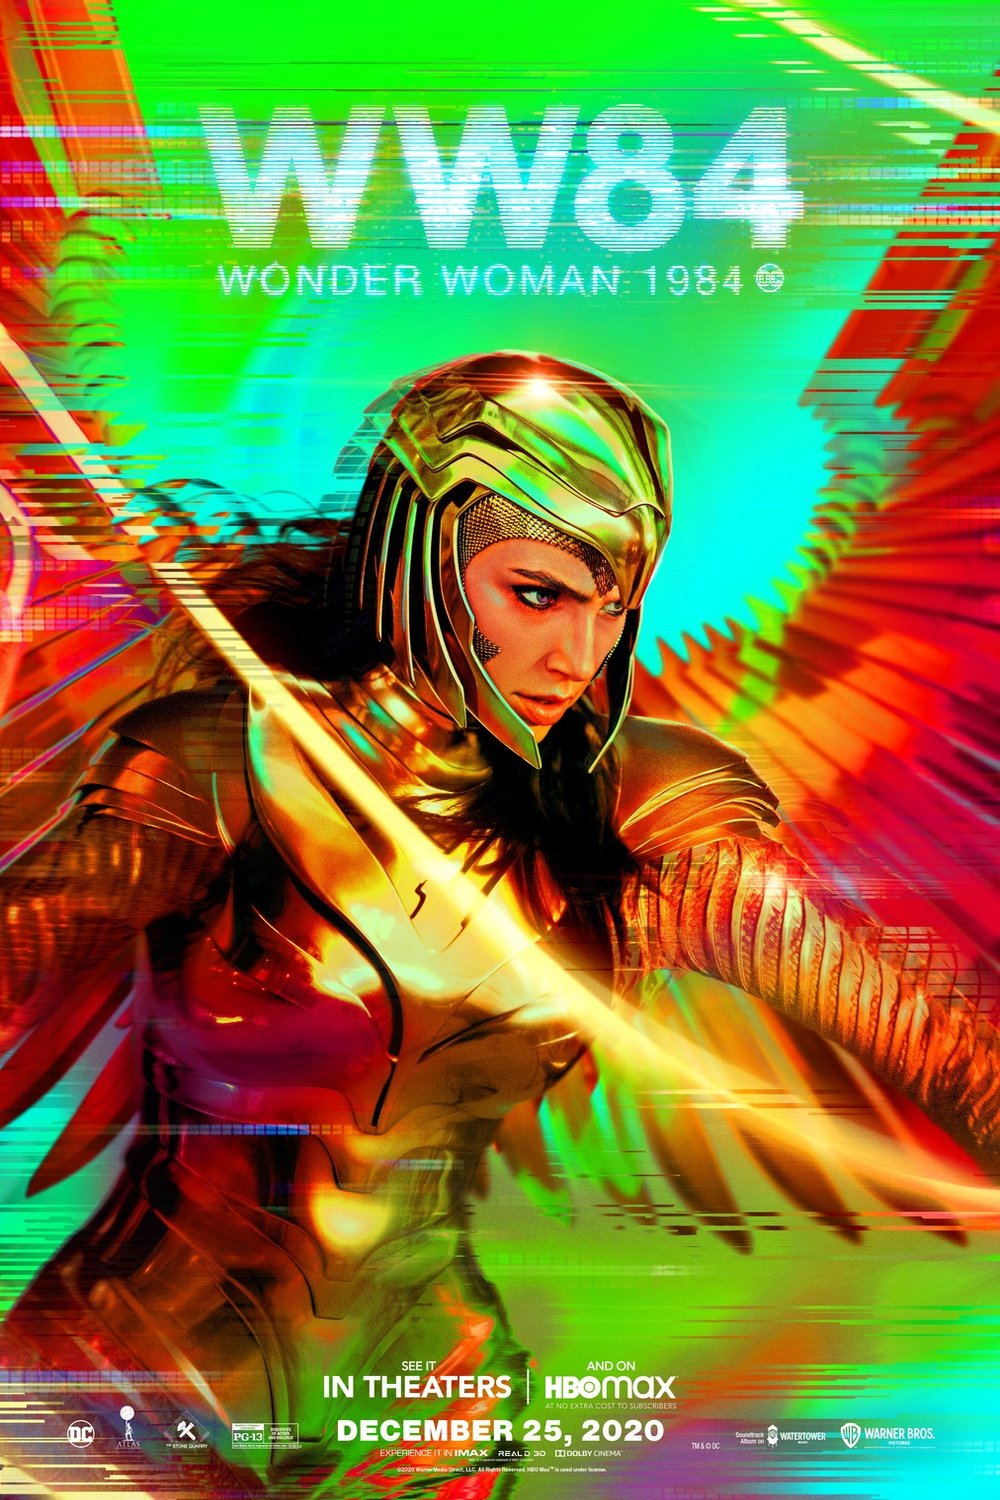 Wonder Woman 1984 movie information